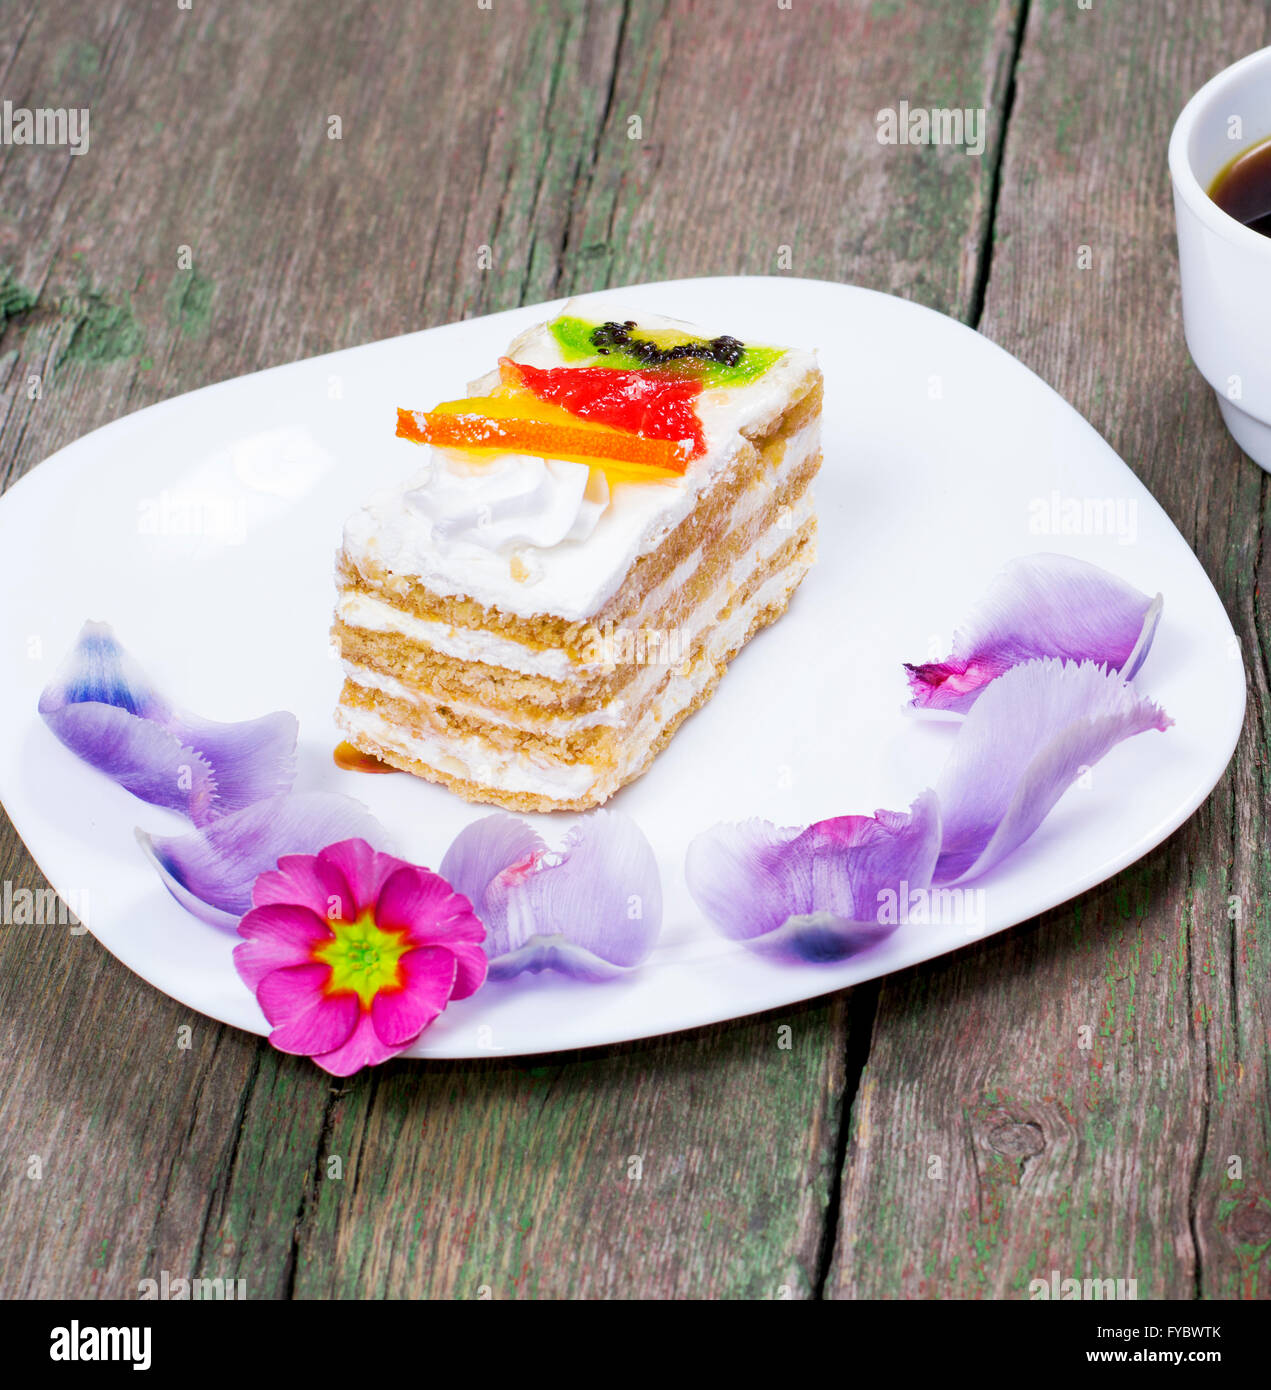 Le gâteau de fruit sur une assiette blanche décorée de fleurs Banque D'Images